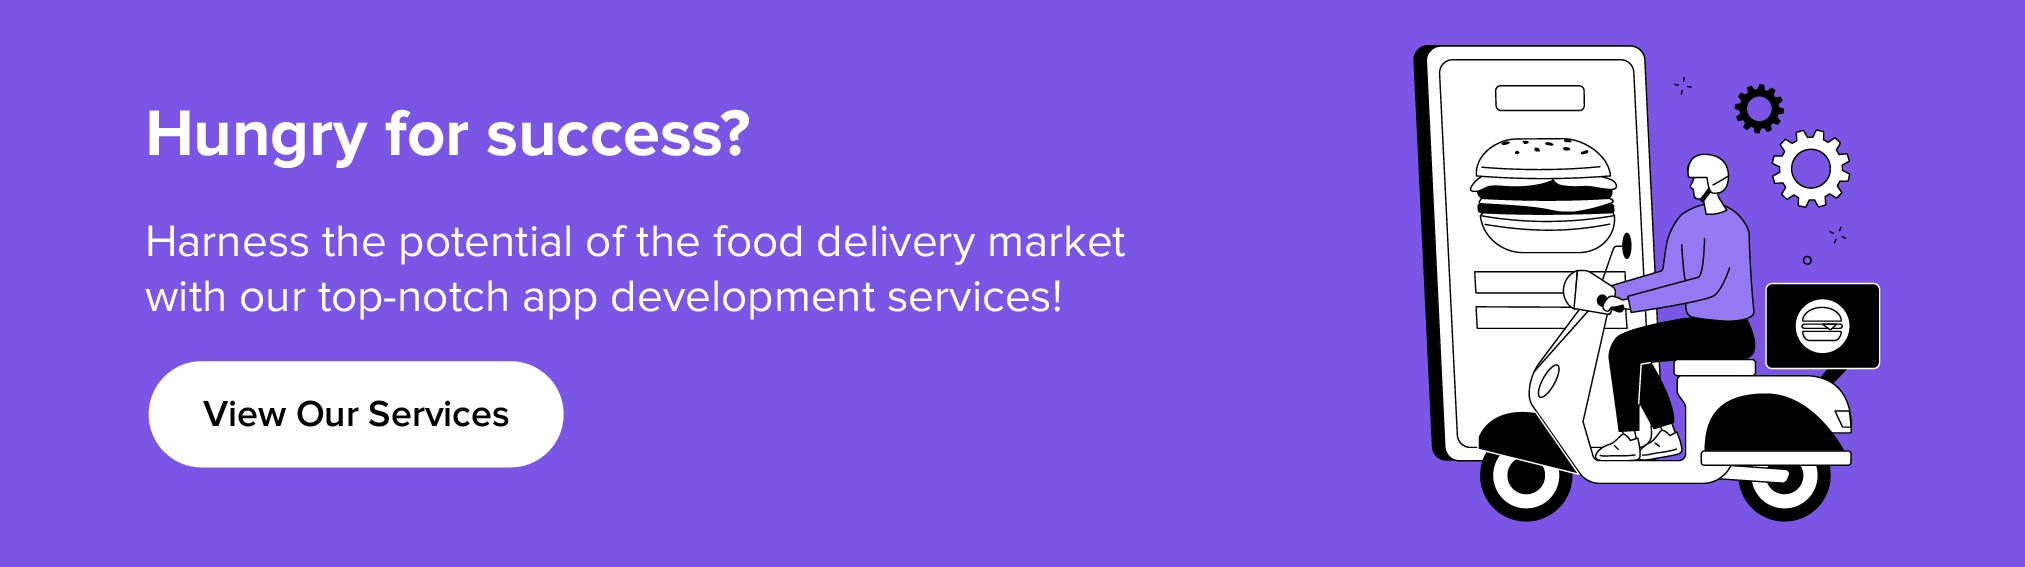 Approfitta dei nostri servizi per sfruttare il potenziale del mercato della consegna di cibo.